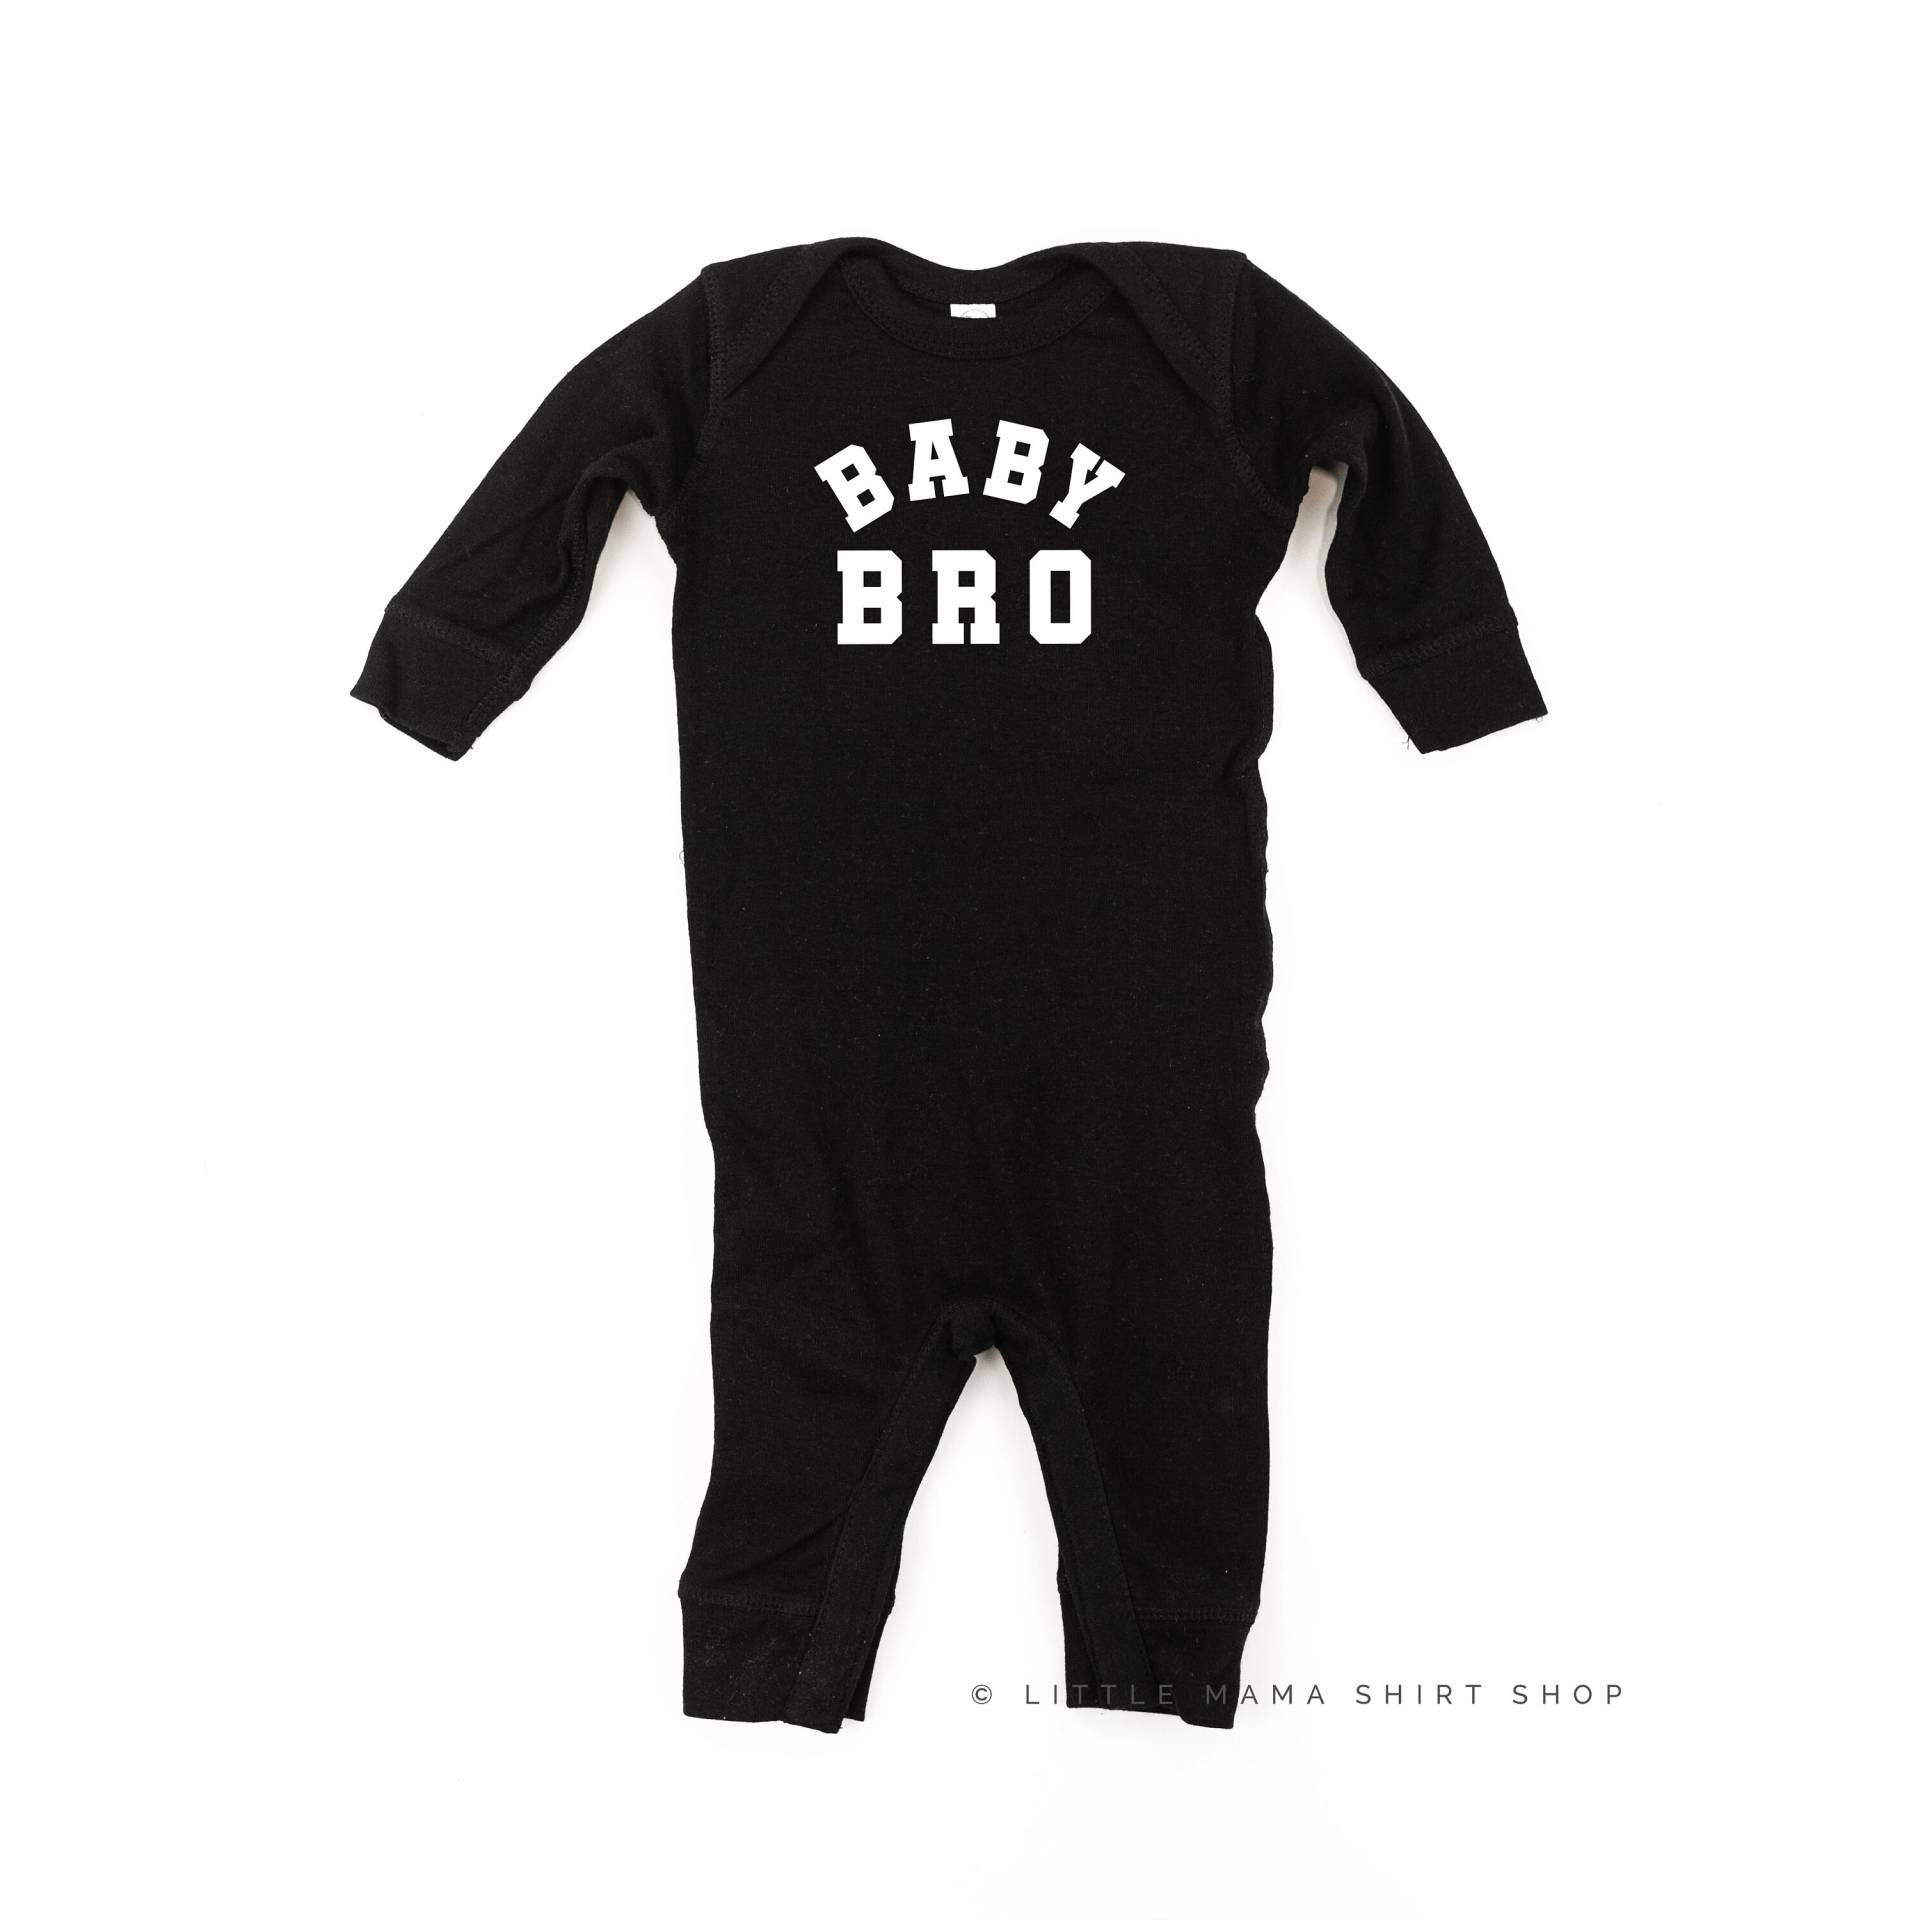 Baby Bro - Varsity One Piece Baby Sleeper | Body Grafik Tees Strampler Schlafer Geschwister von LittleMamaShirtShop